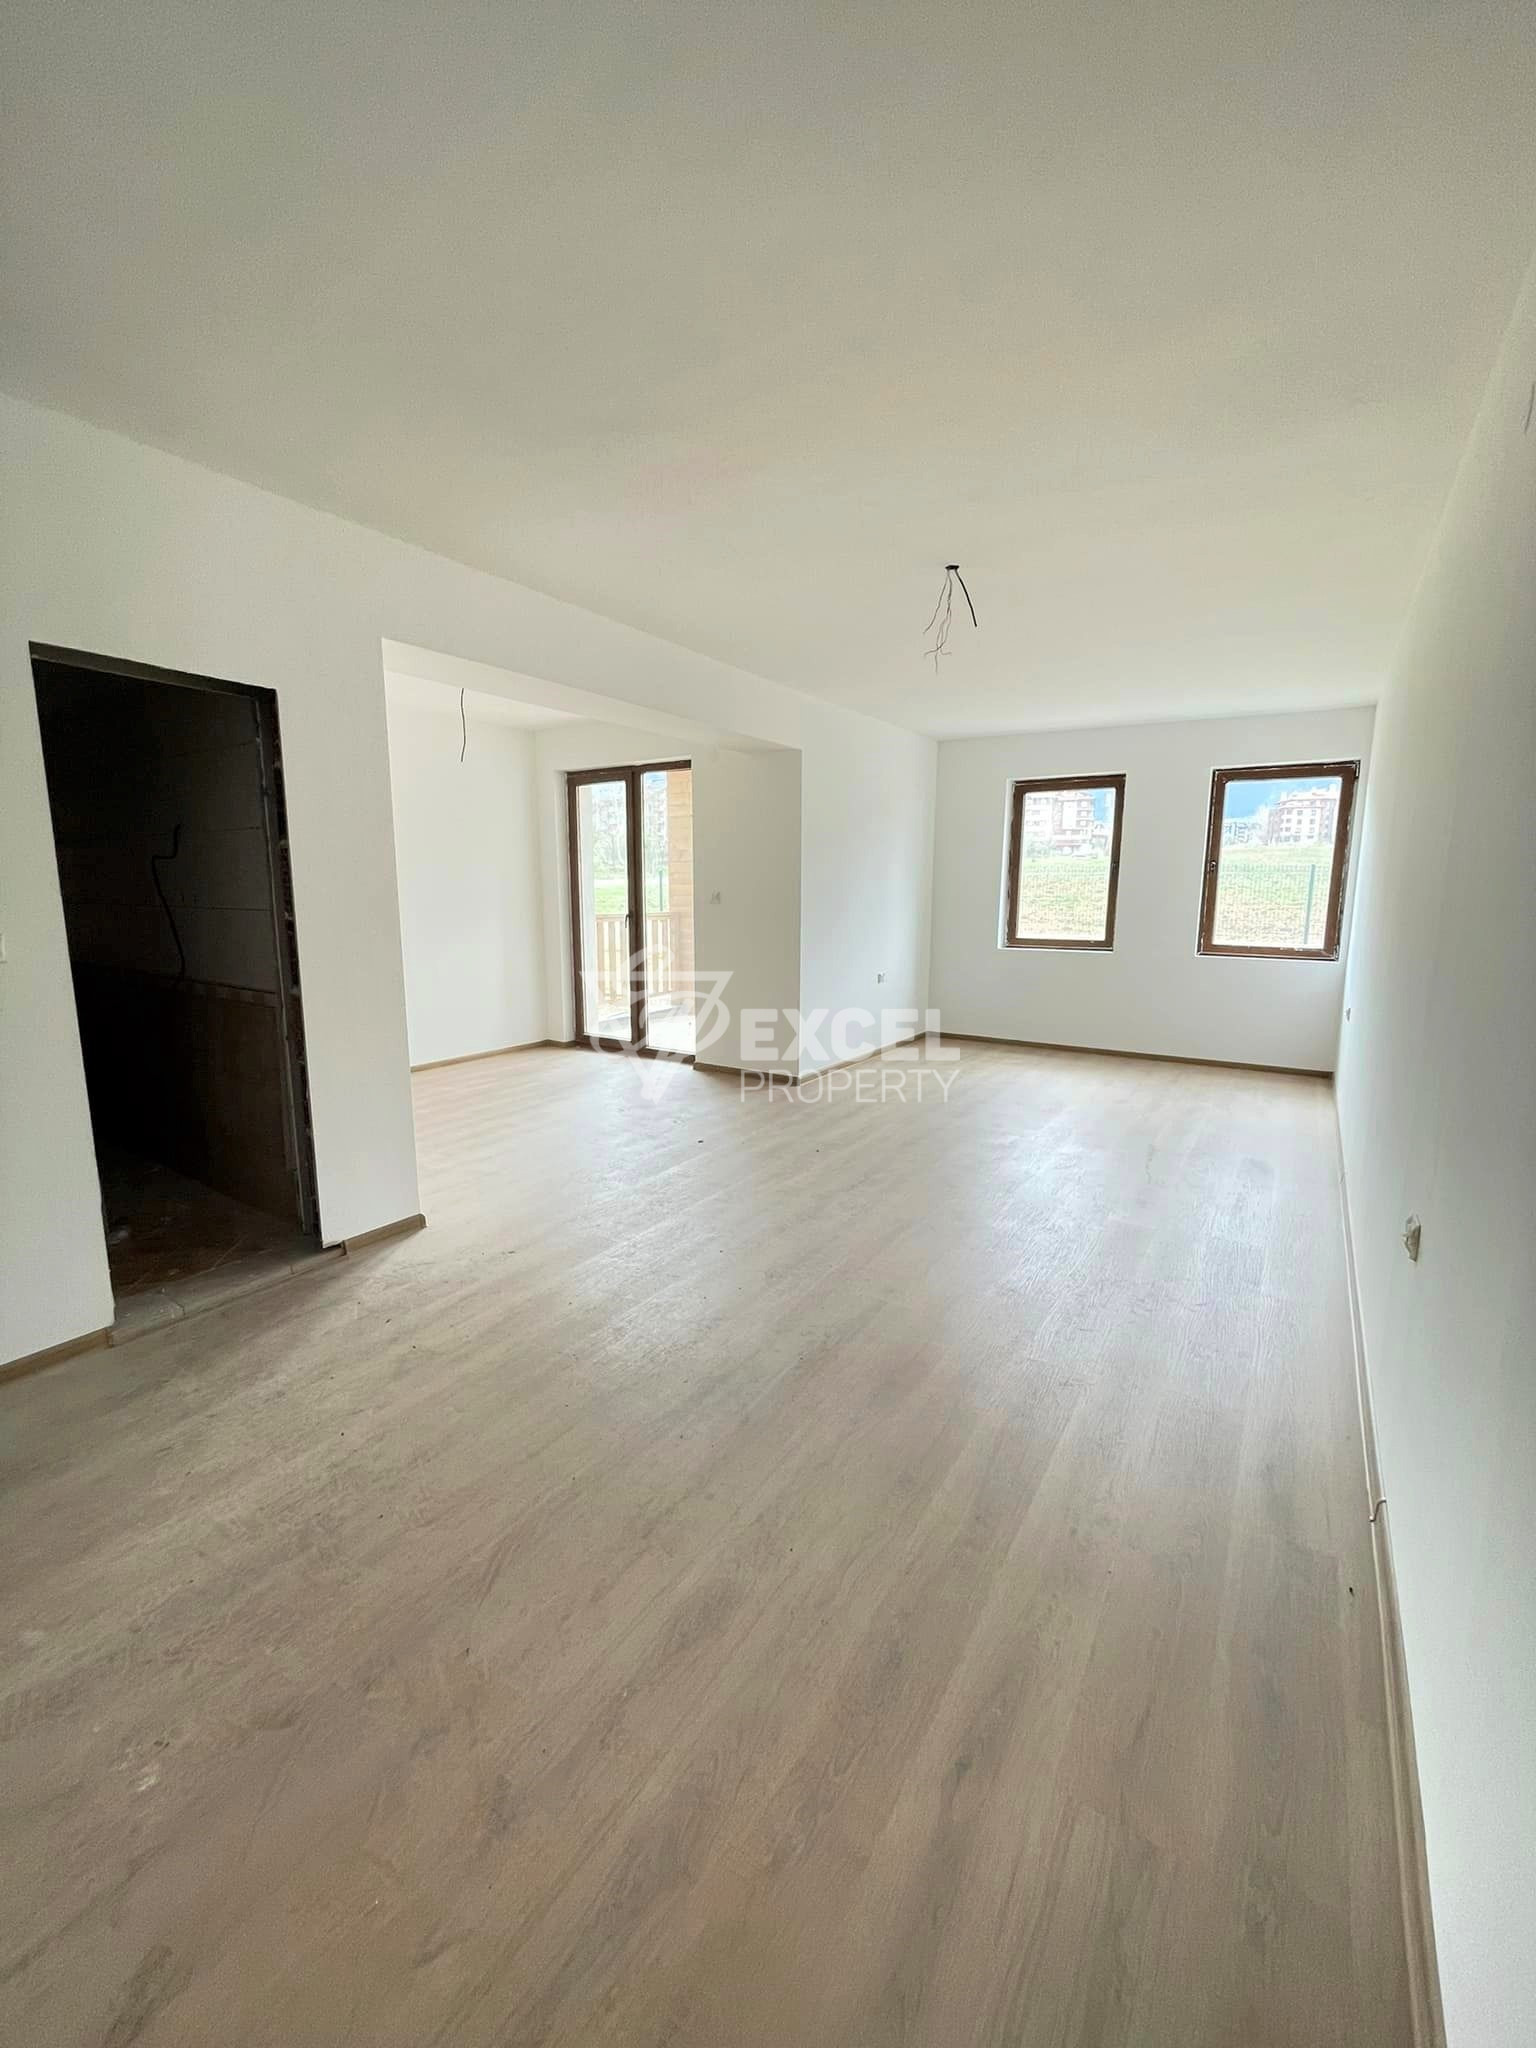 Продается новая двухкомнатная квартира у подножия горы Пирин